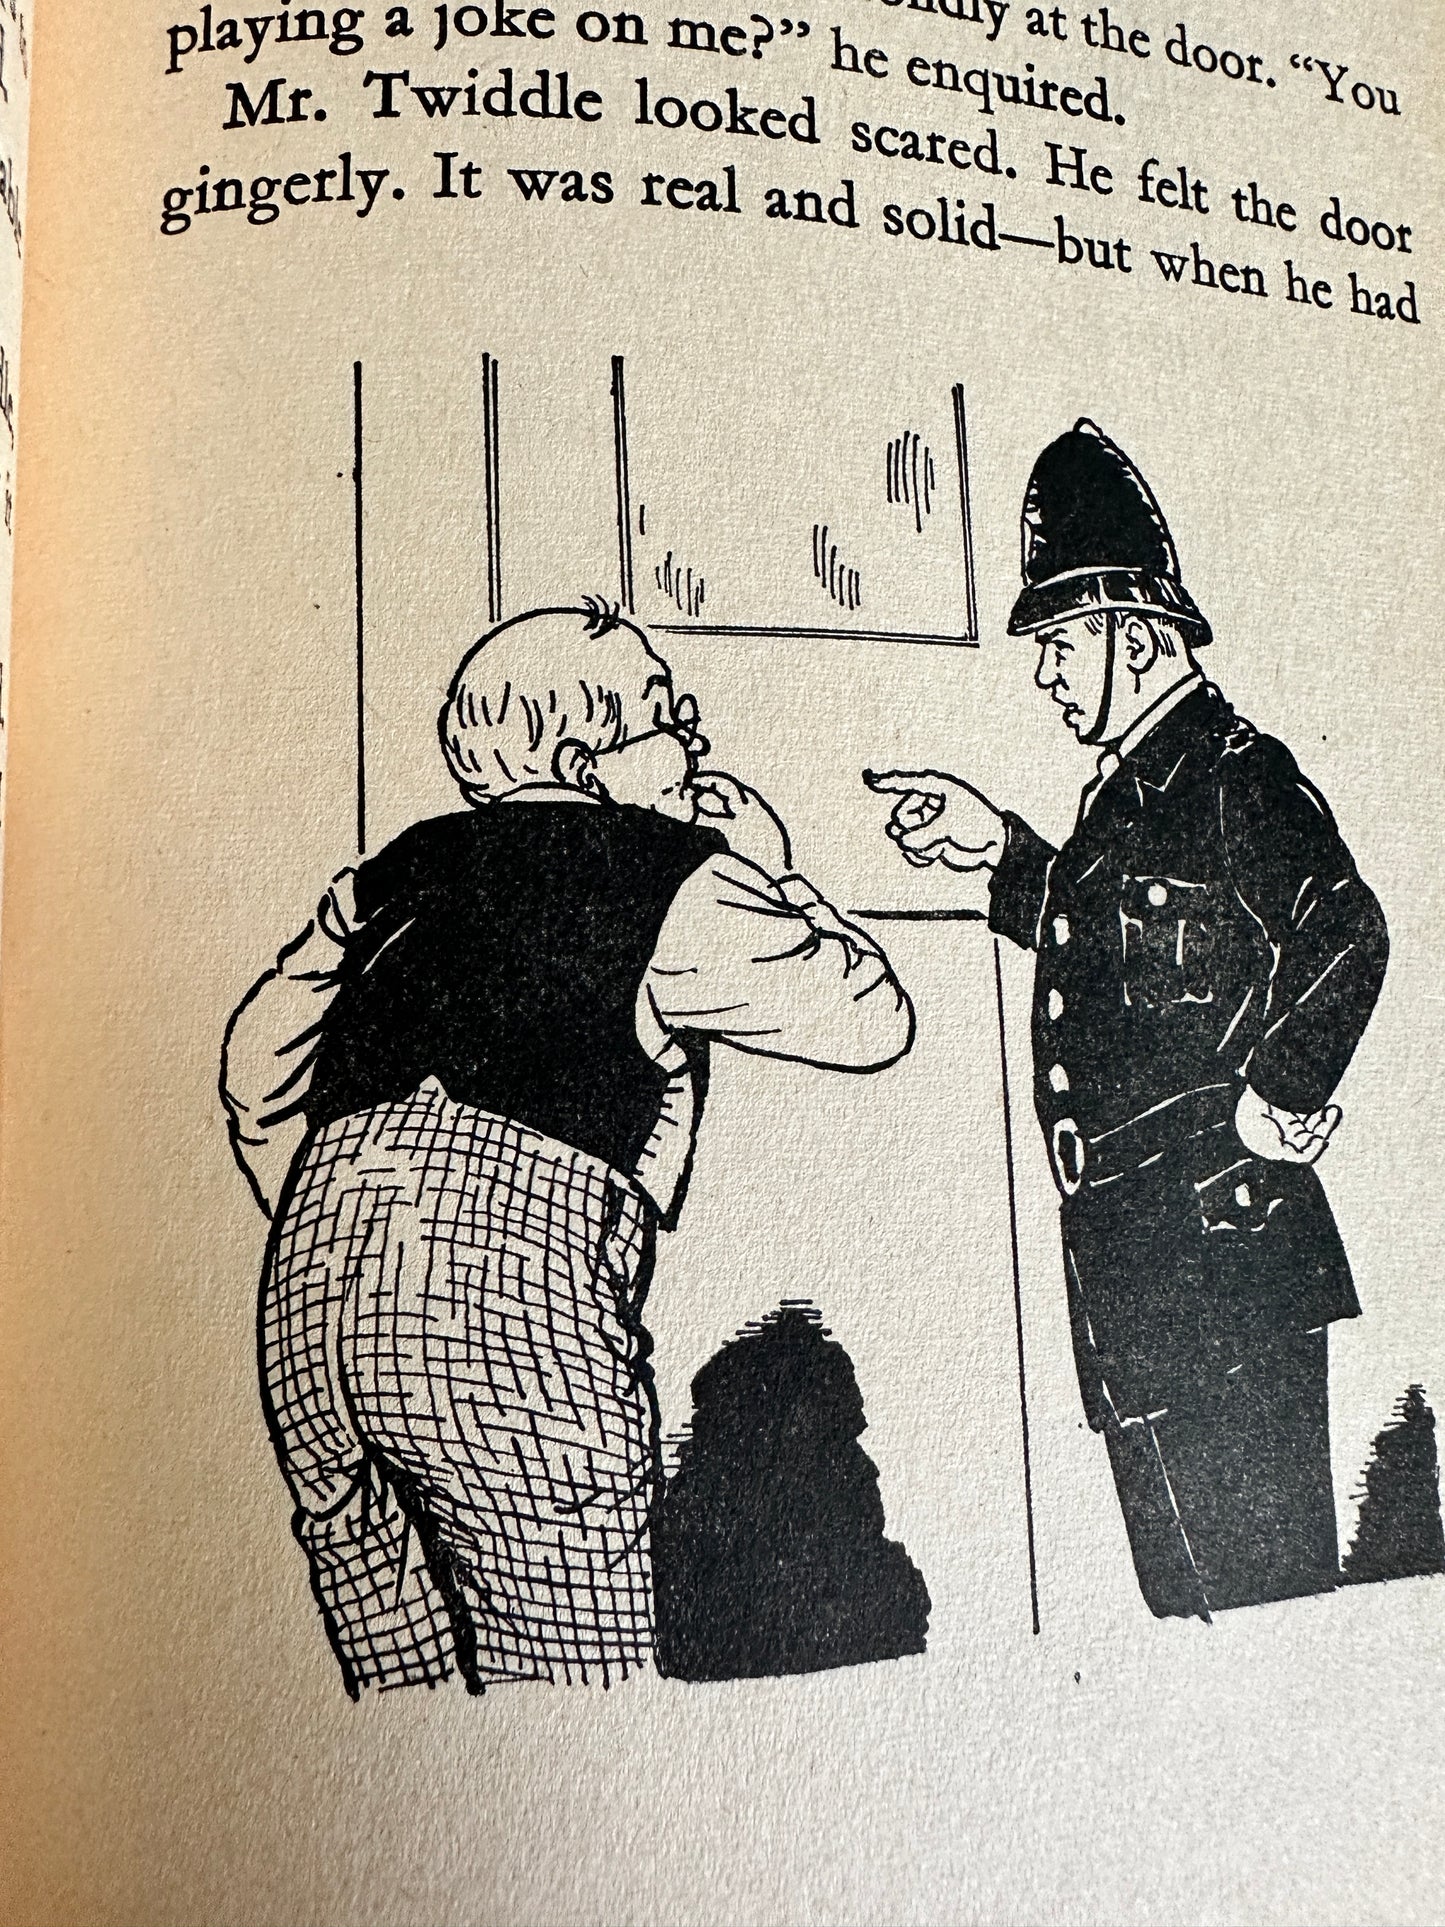 1968 Well, Really Mr. Twiddle - Enid Blyton(George Newnes Ltd published by Dean & Son Ltd)